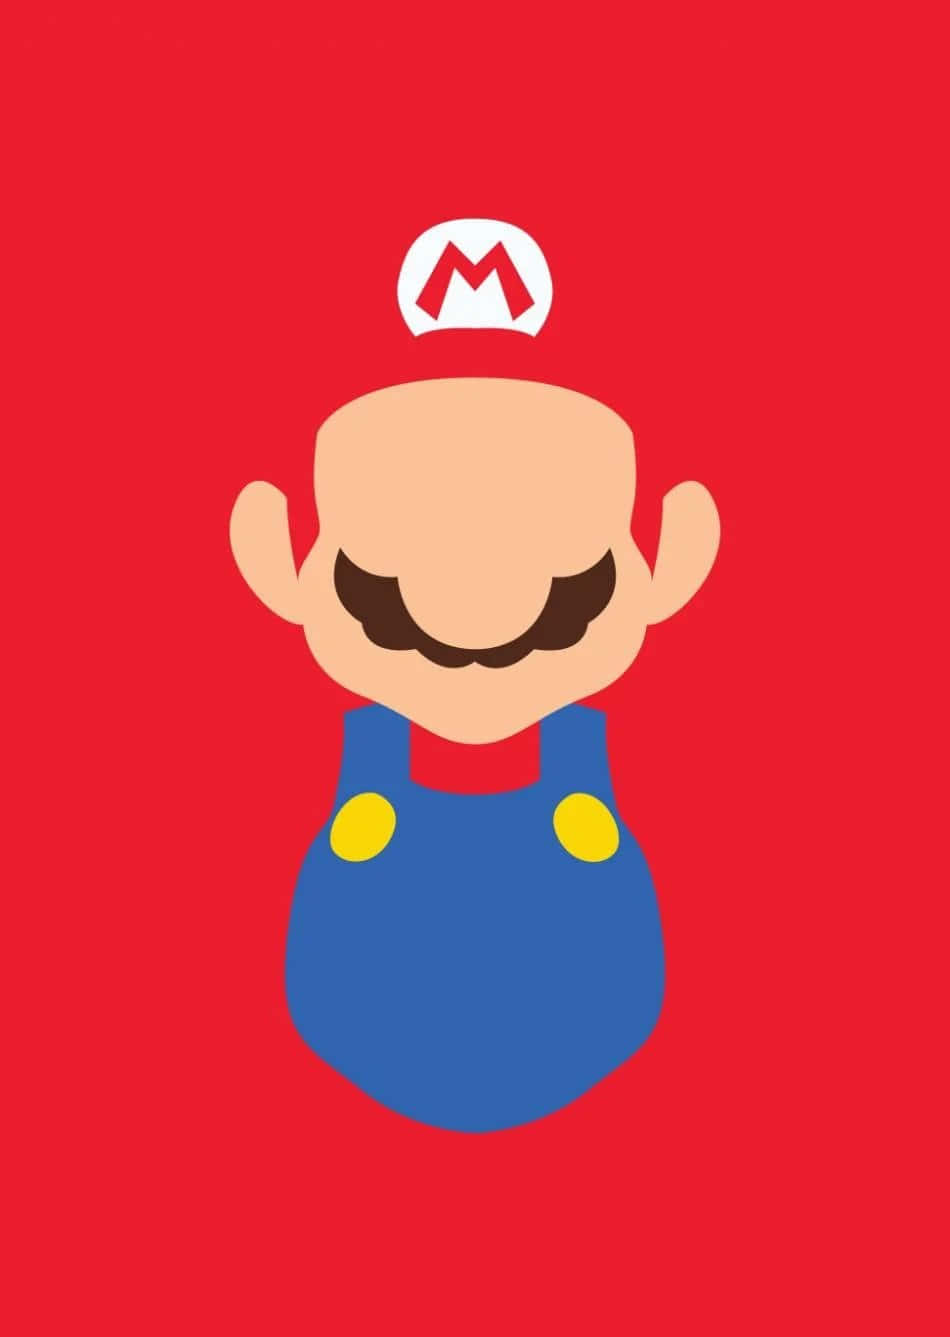 Mario stirrer ind i horisonten, klar til hans næste fantastiske eventyr.